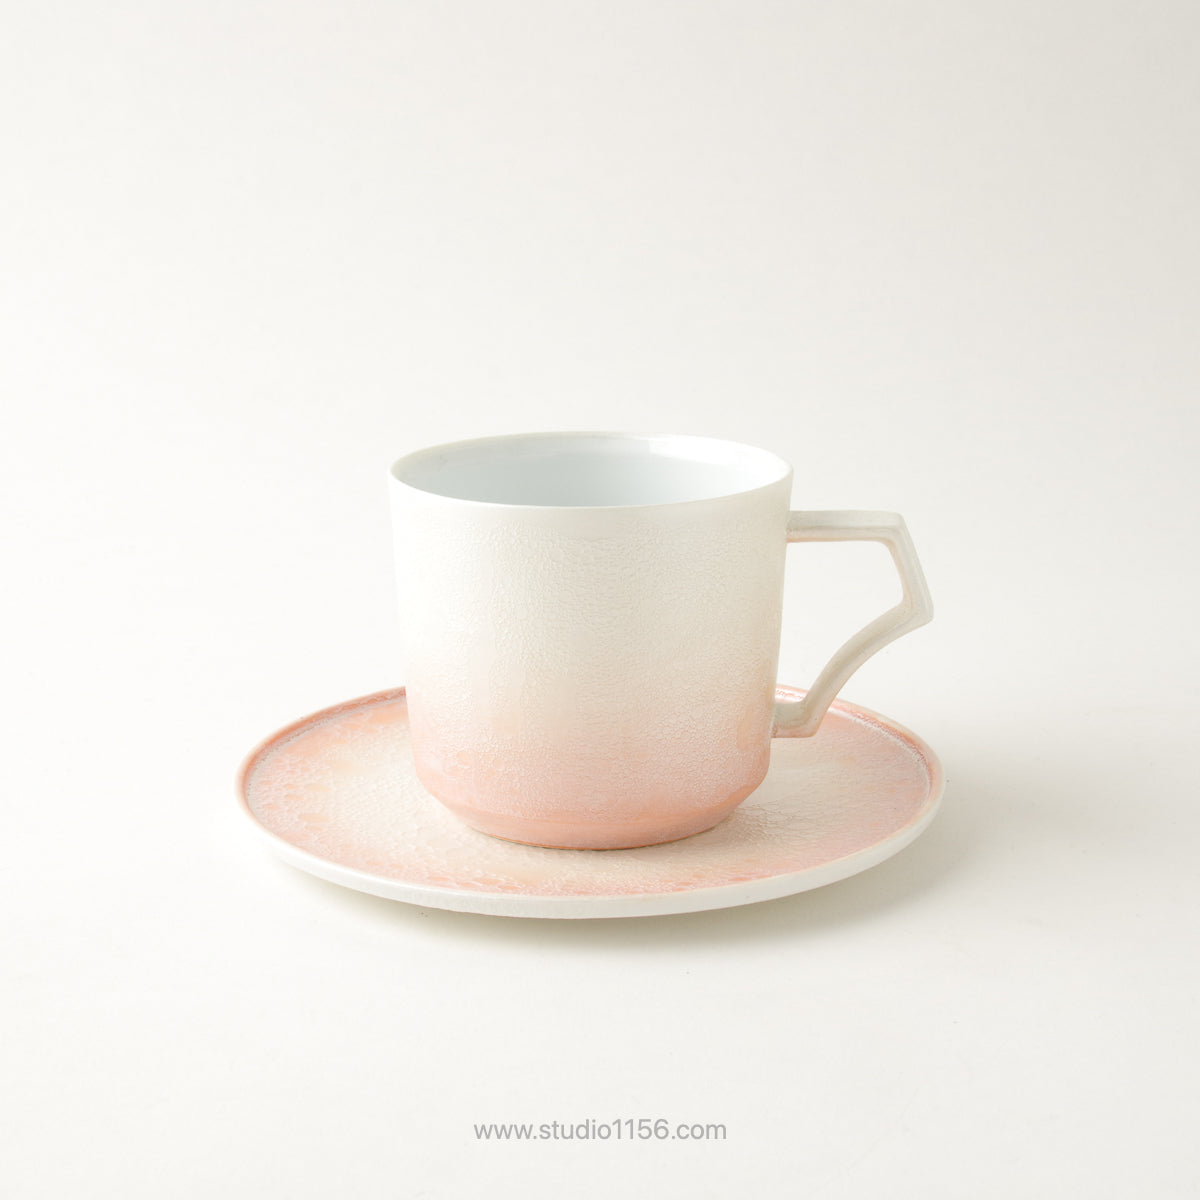 有田焼 [強化磁器] frameコーヒーカップ 200ml AHJ 渕橙白 ARITA HASAMI JAPAN Studio1156